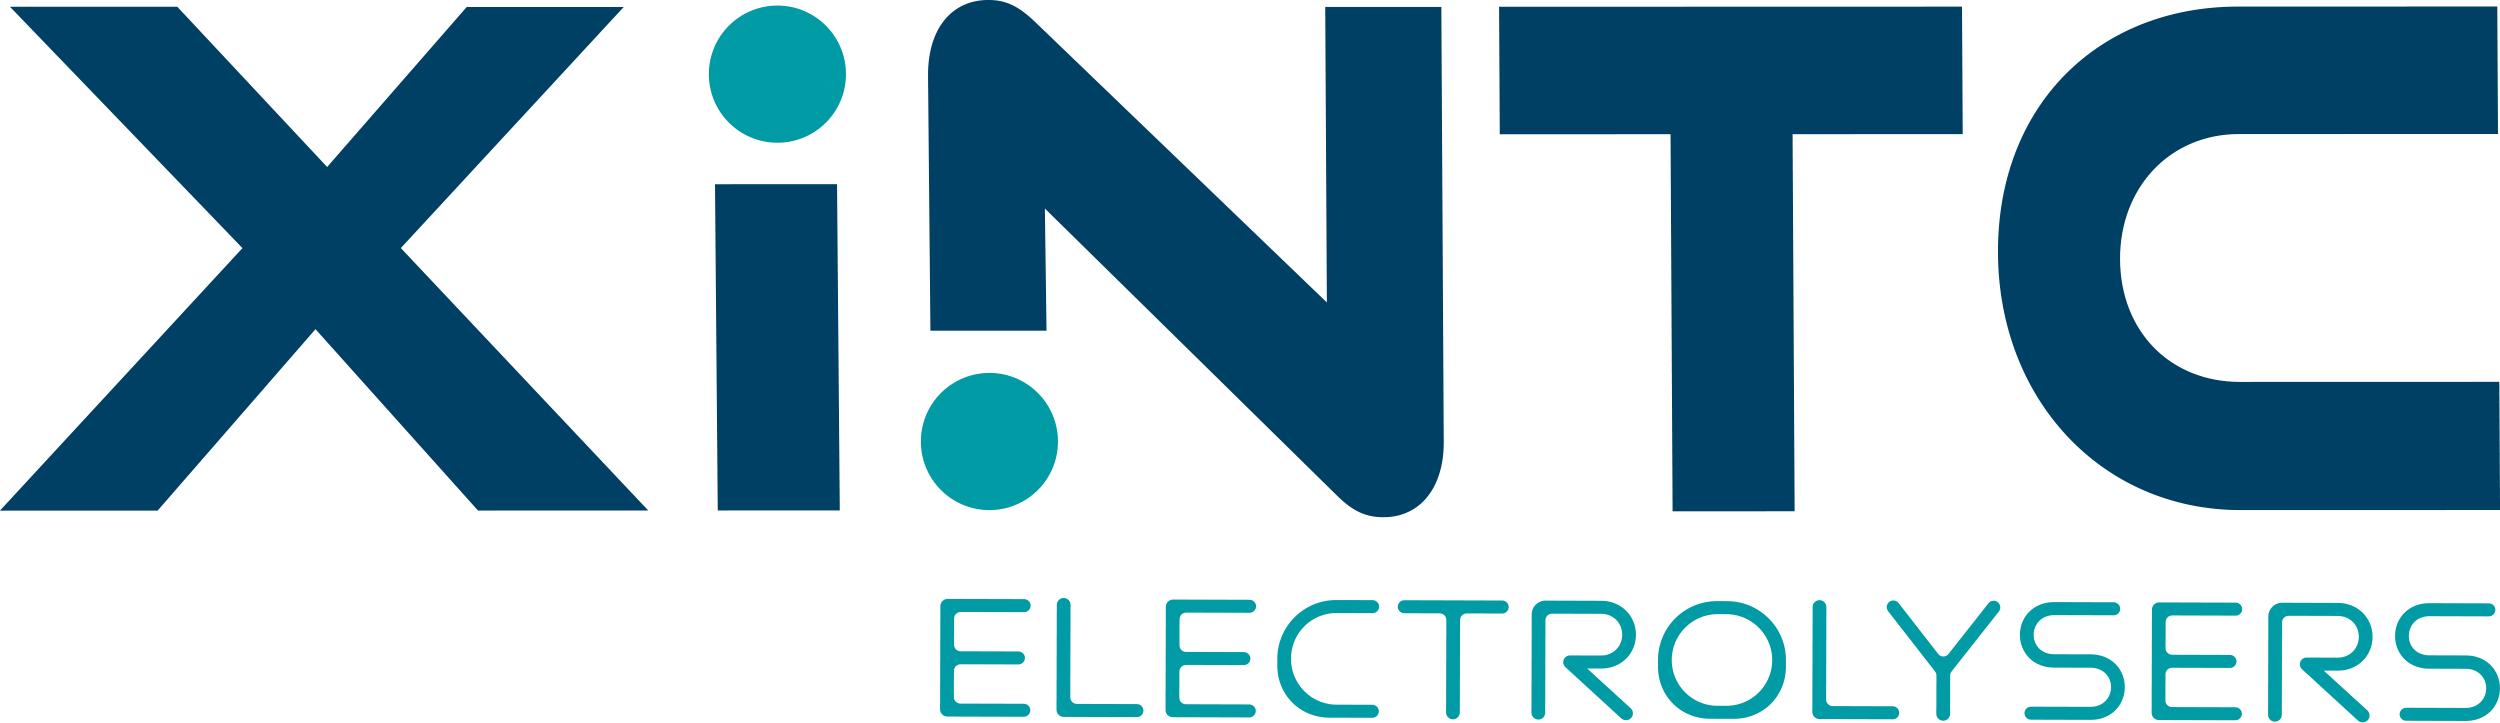 Logo-XINTC-RGB